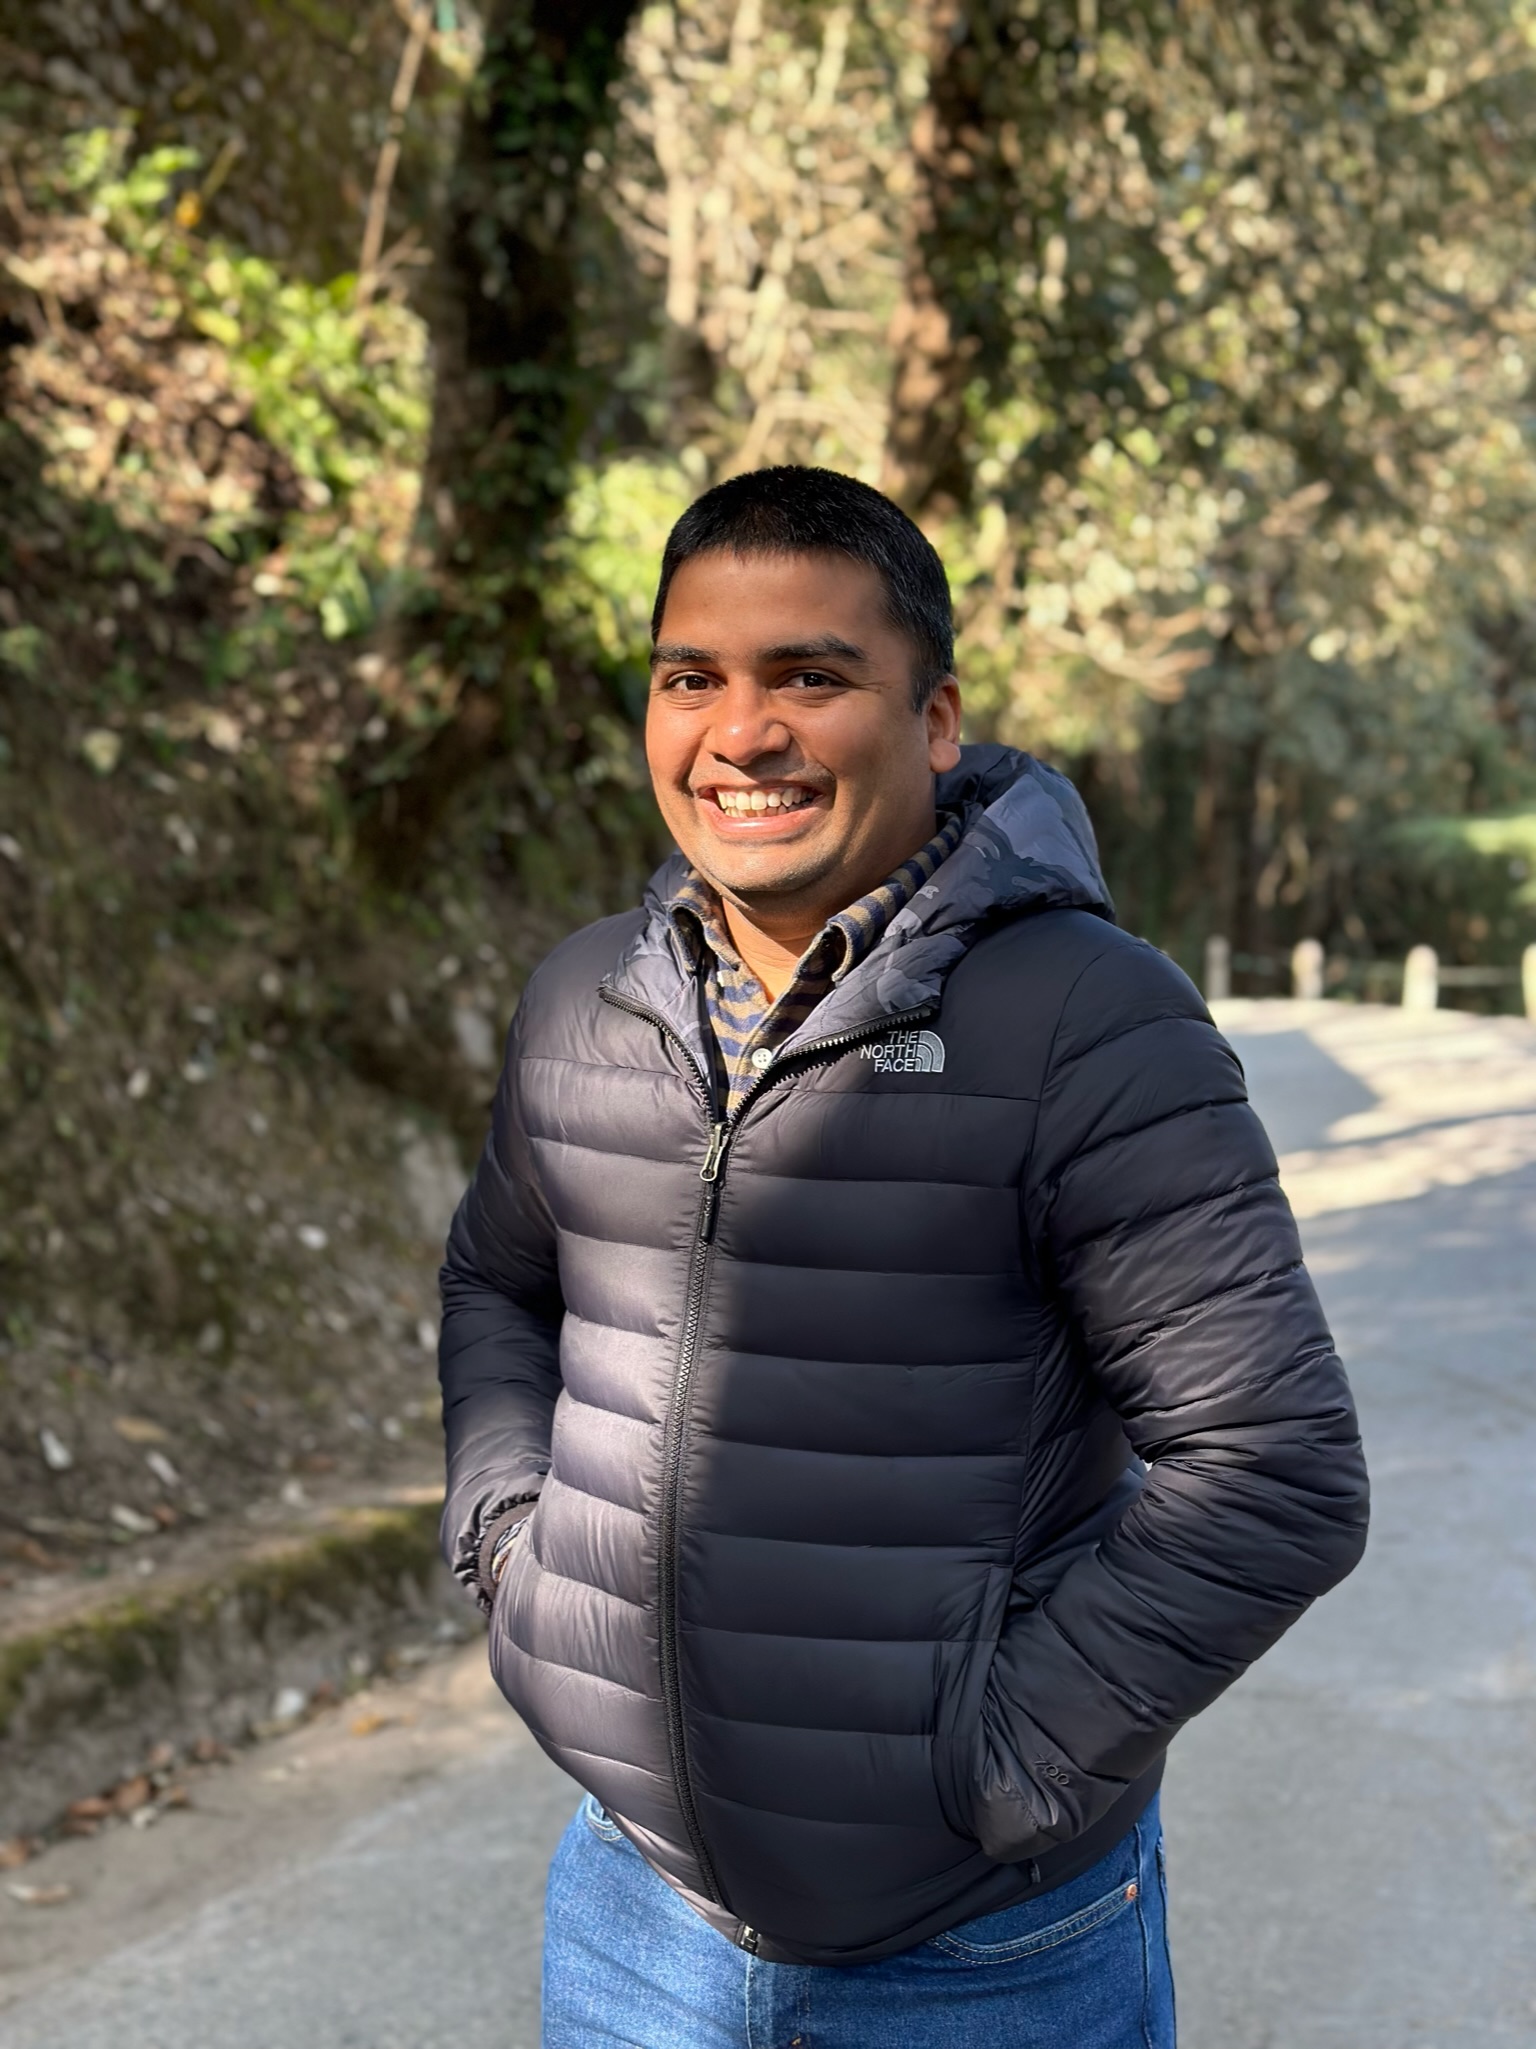 Dr. Gaurav Mittal walks along a road